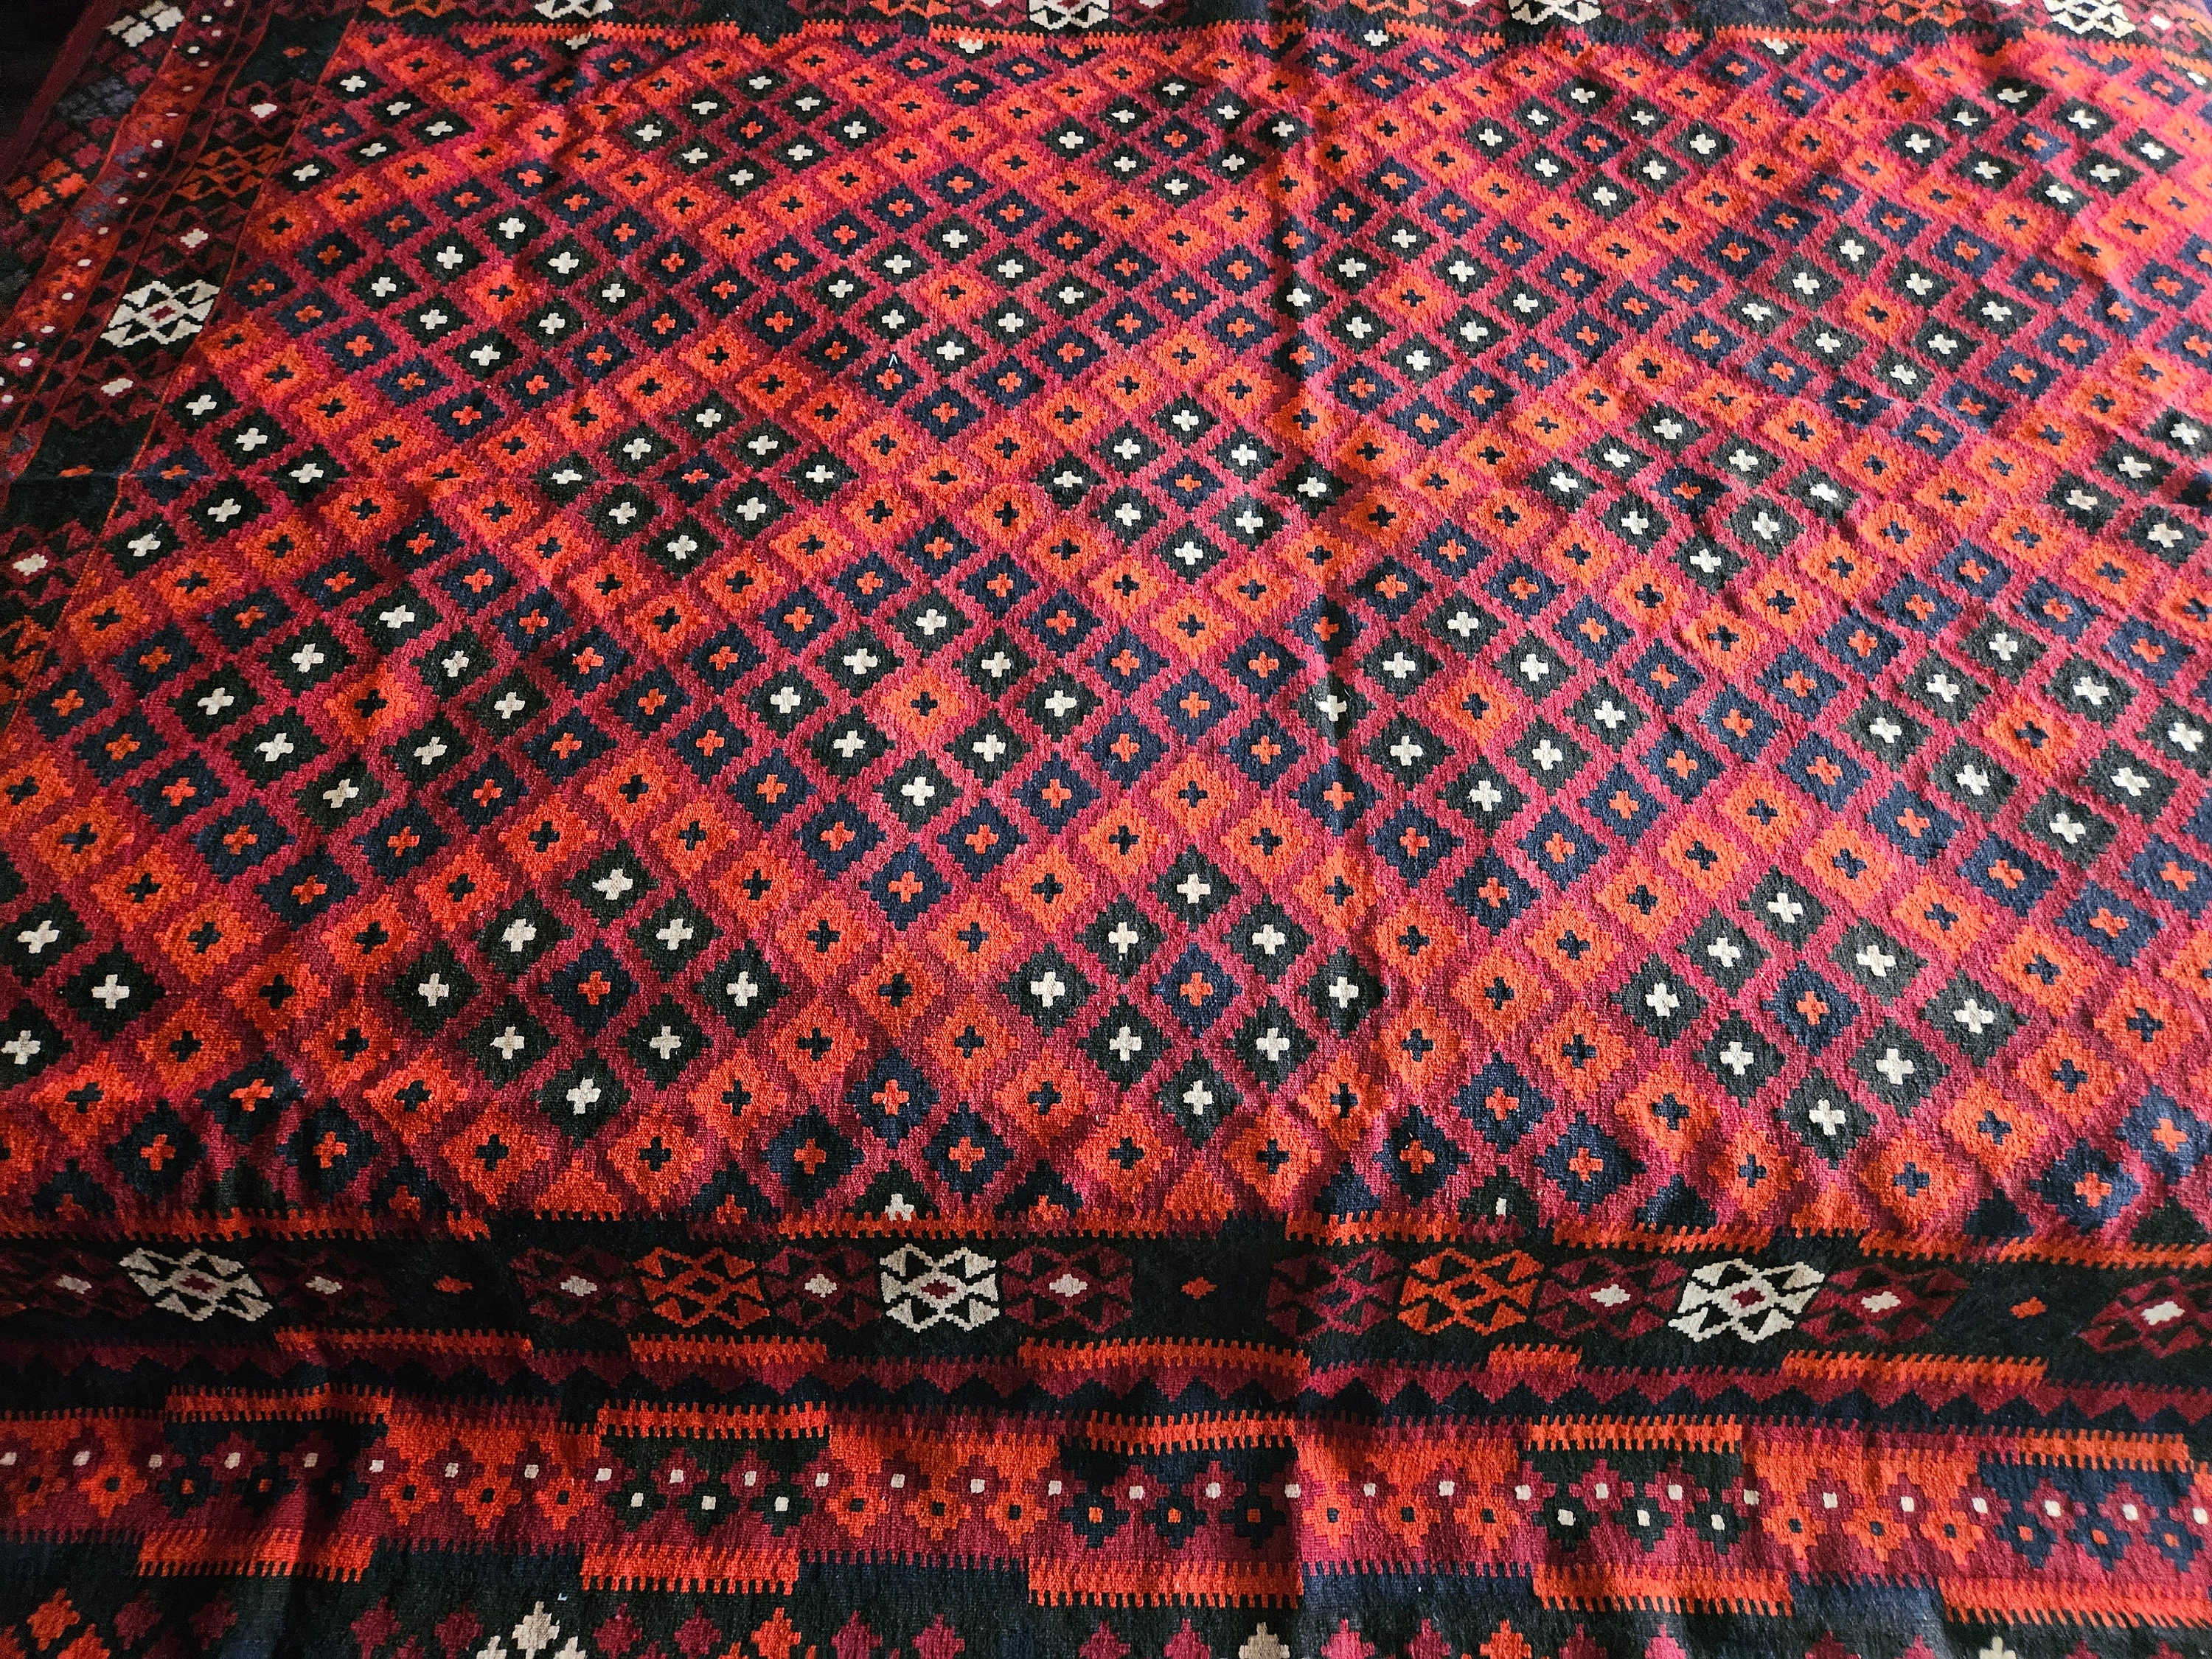 8X11 kilim rug, Orange Handmade kilimrug, sheepskin rug, persian rug, hand made rug, afghan kilimrug, flat voven rug Geometric Afghan kilim